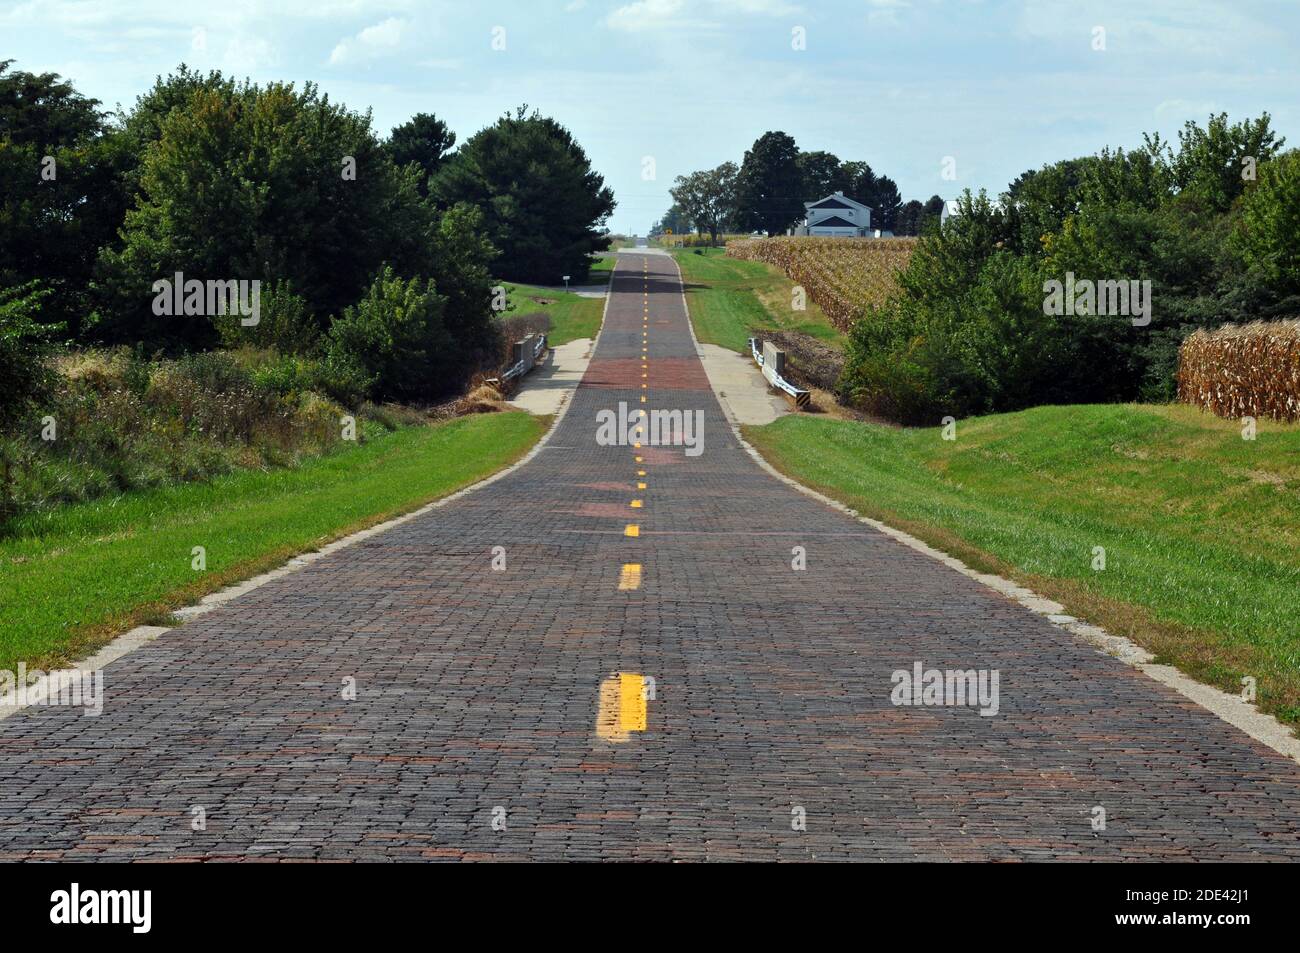 Dieser rote Backsteinabschnitt der alten Route 66 verläuft etwa 1.5 Meilen durch Ackerland in der Nähe von Auburn, IL. Die restaurierte Straße wurde zuerst in den 1930er Jahren gemauert. Stockfoto